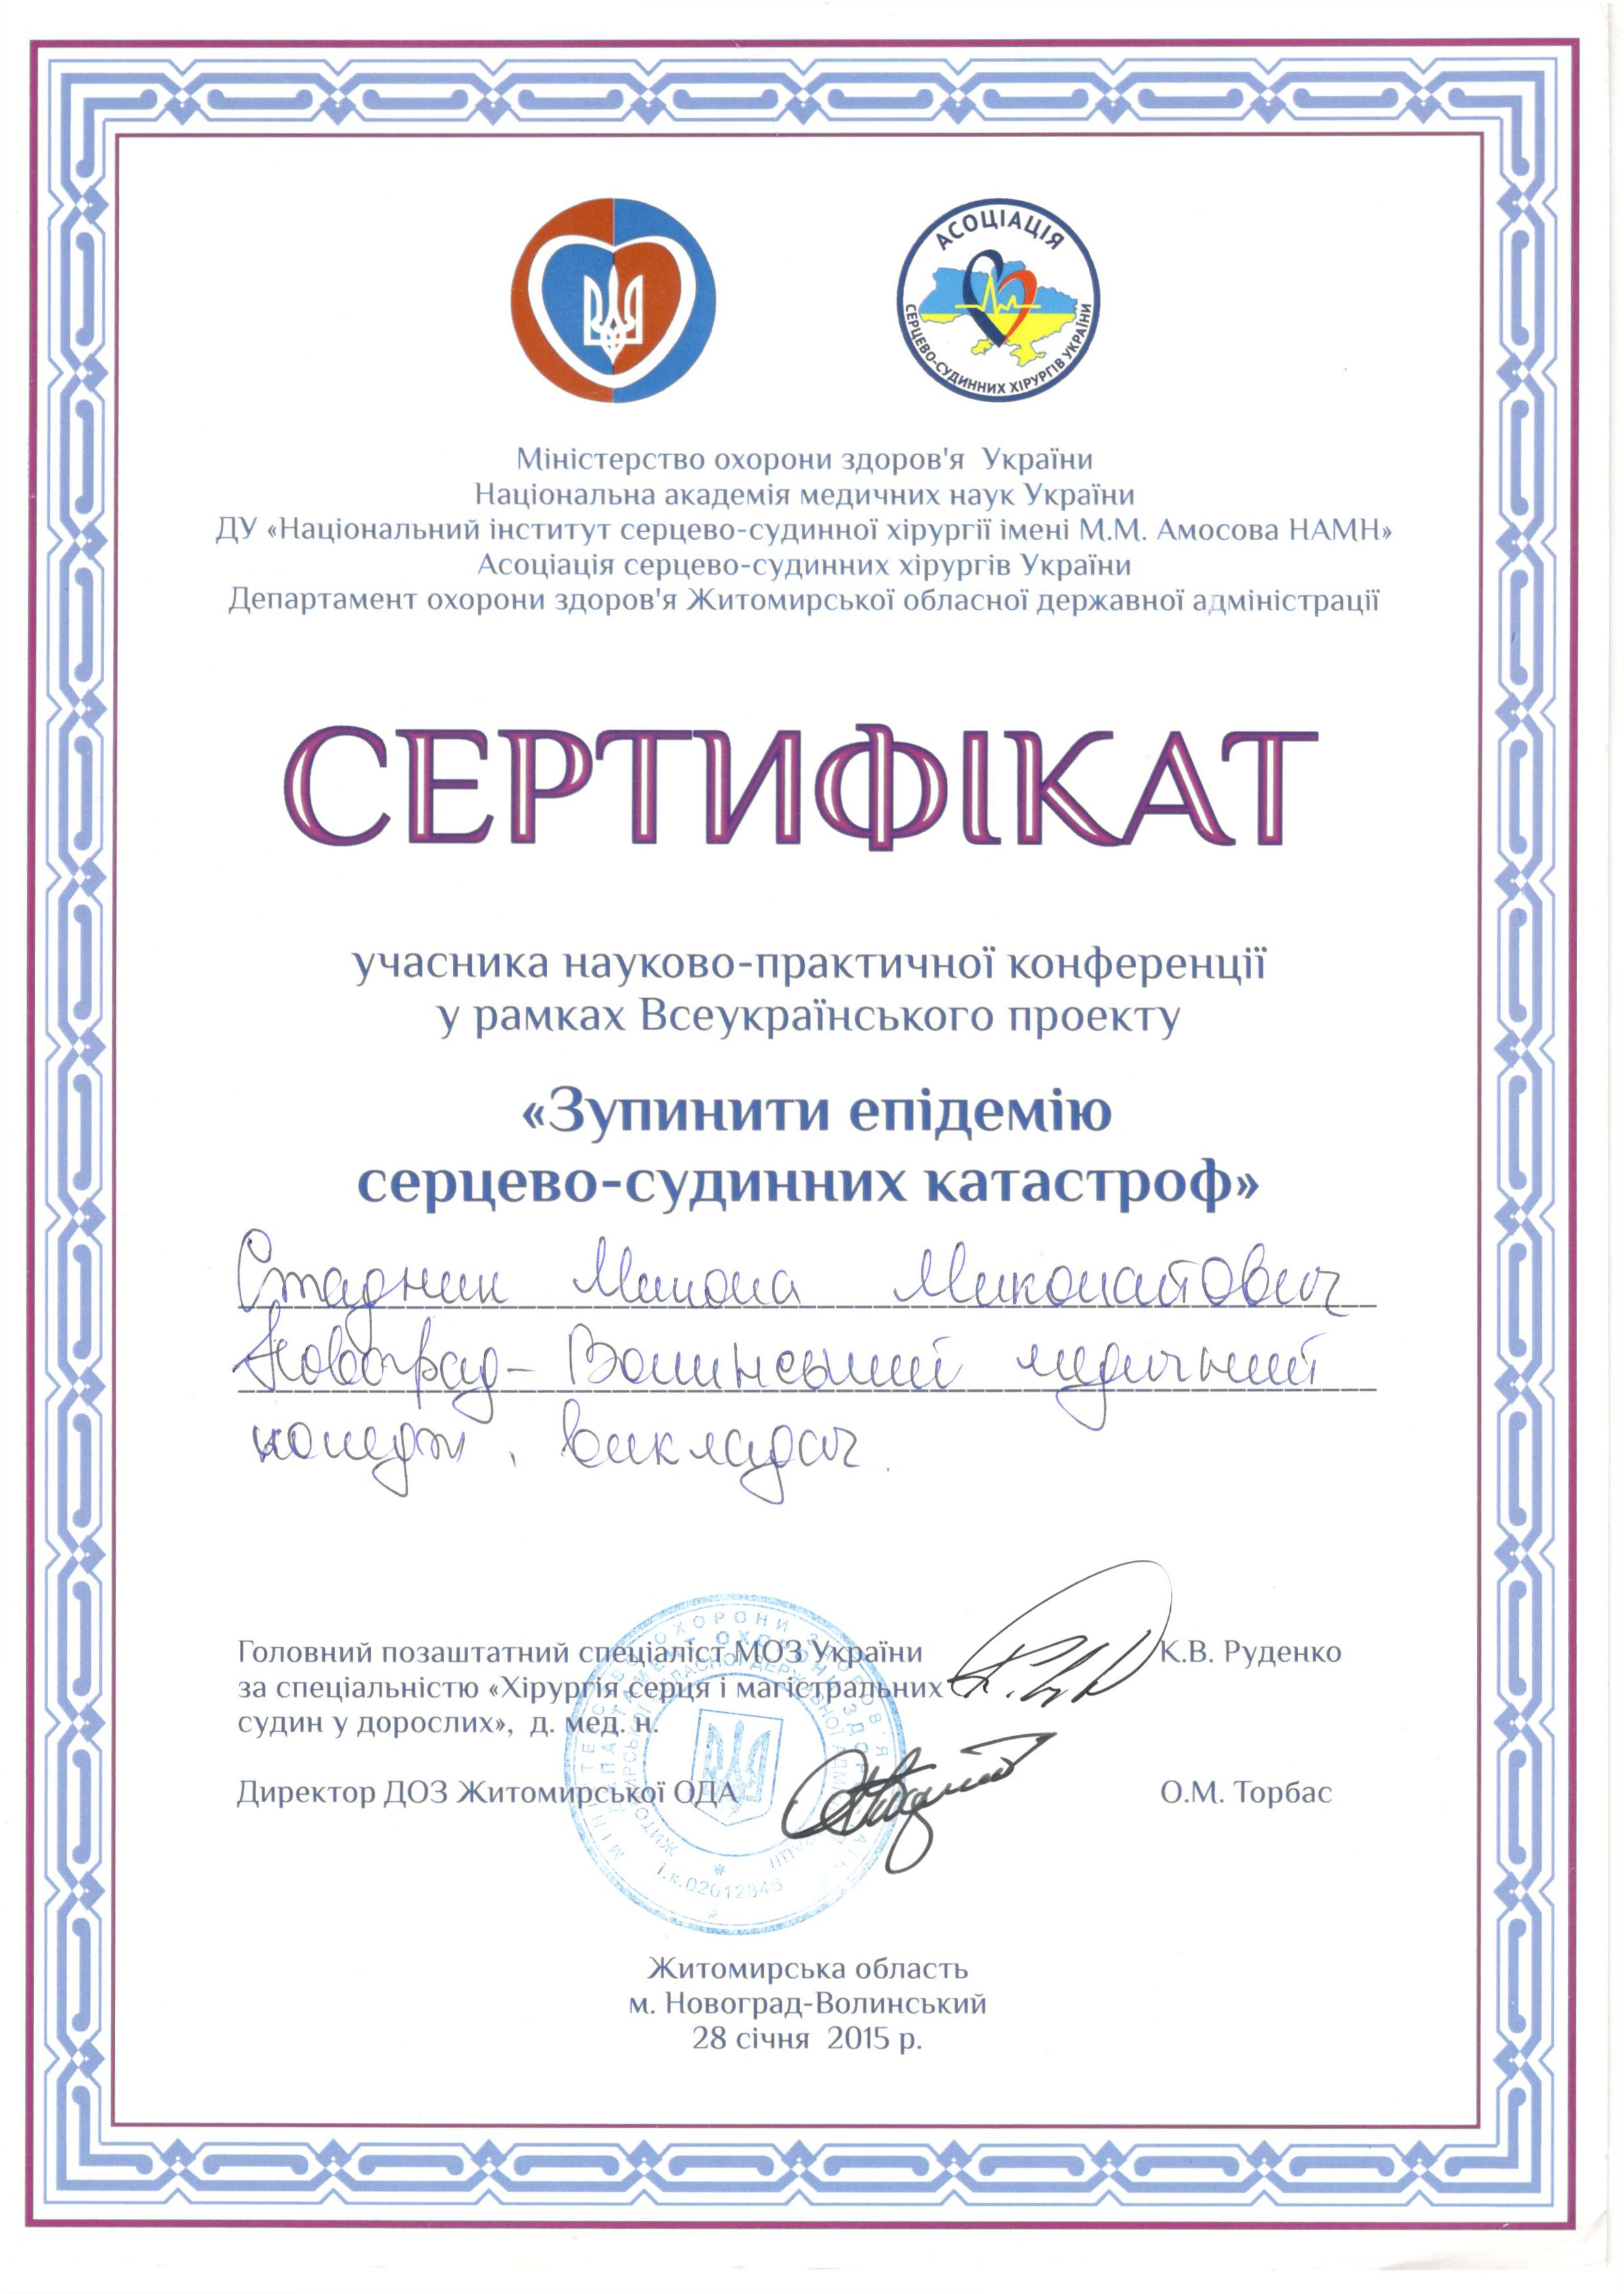 Сертифікат учасника науково-практичної конференції у рамках Всеукраїнського проекту «Зупини епідемію серцево-судинних катастроф»